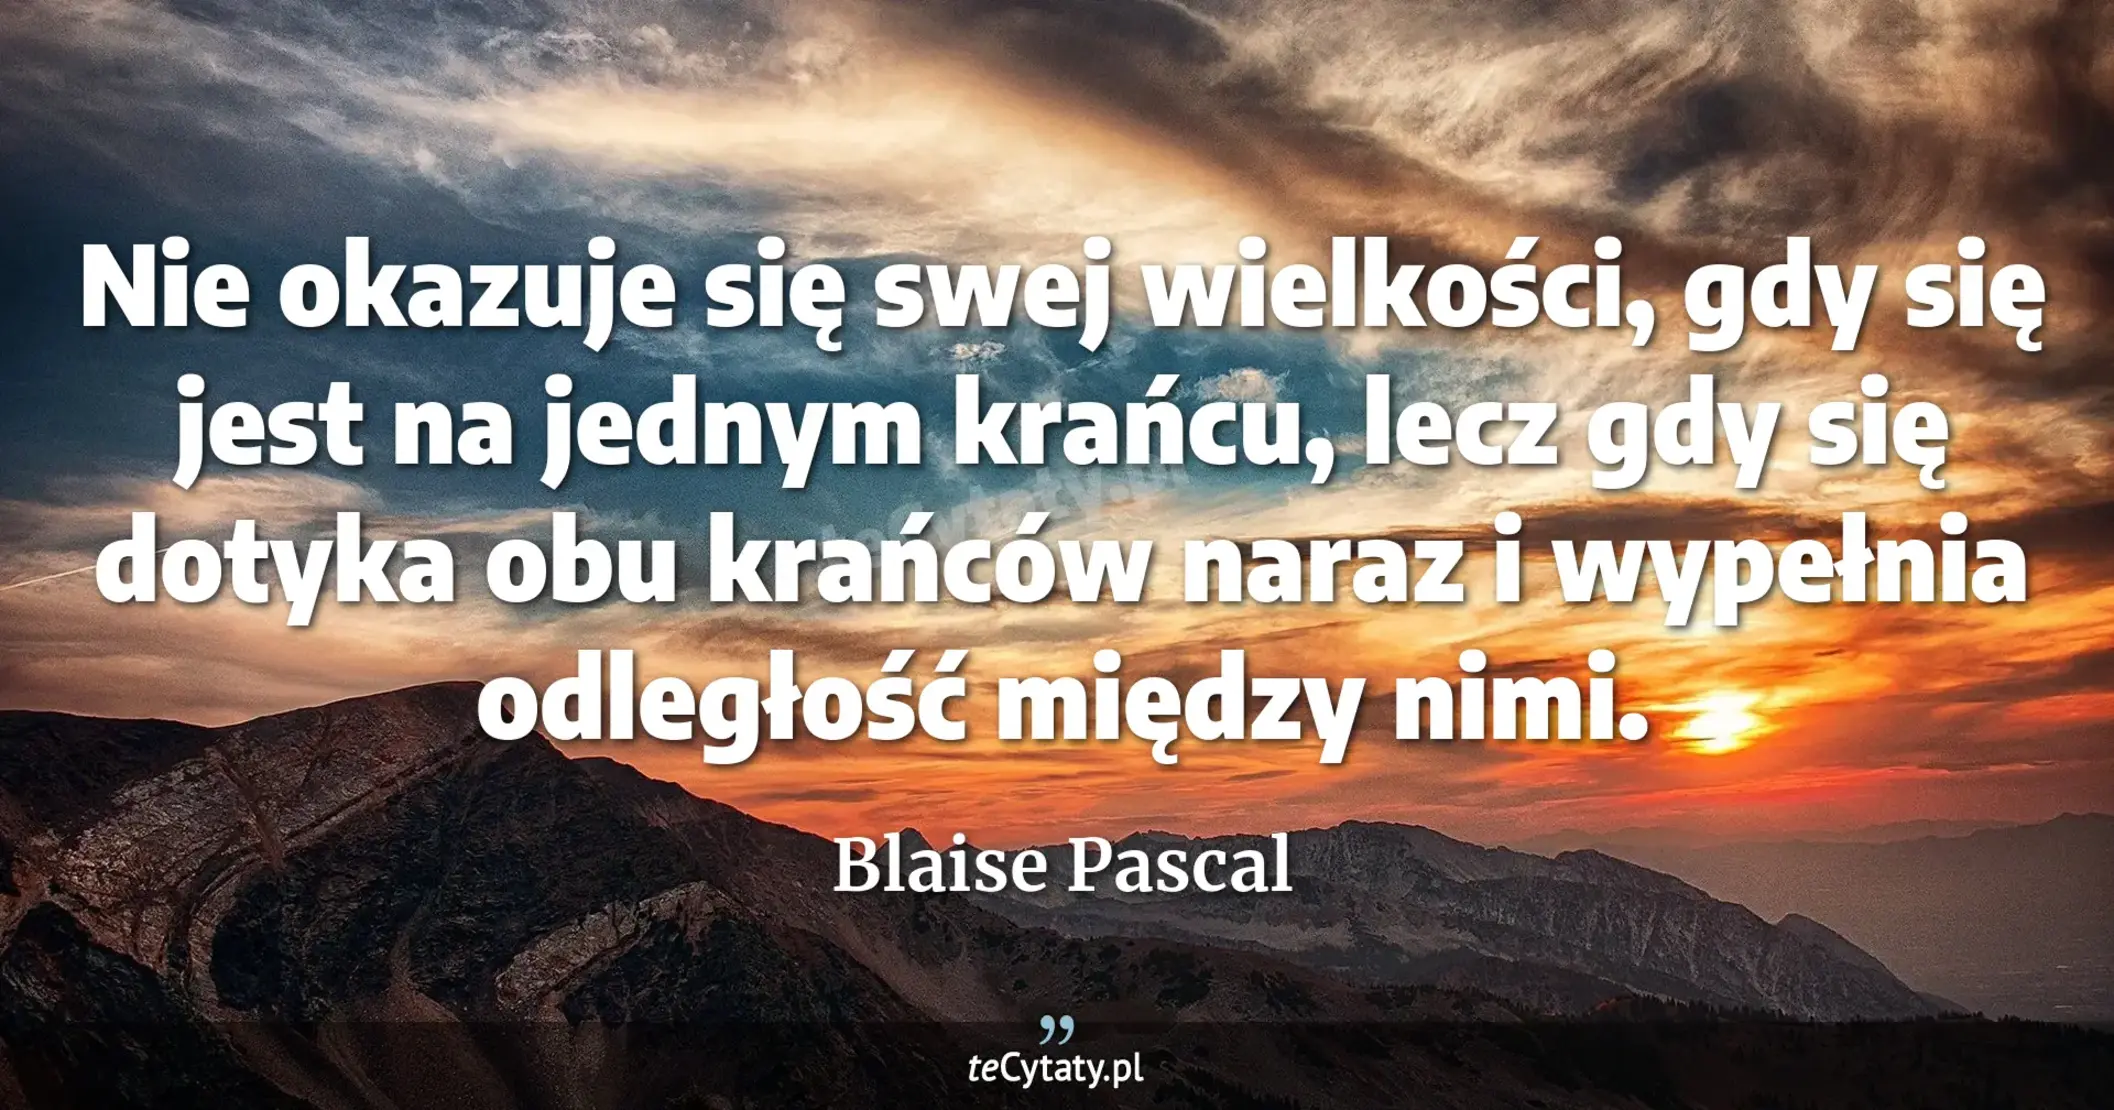 Nie okazuje się swej wielkości, gdy się jest na jednym krańcu, lecz gdy się dotyka obu krańców naraz i wypełnia odległość między nimi. - Blaise Pascal